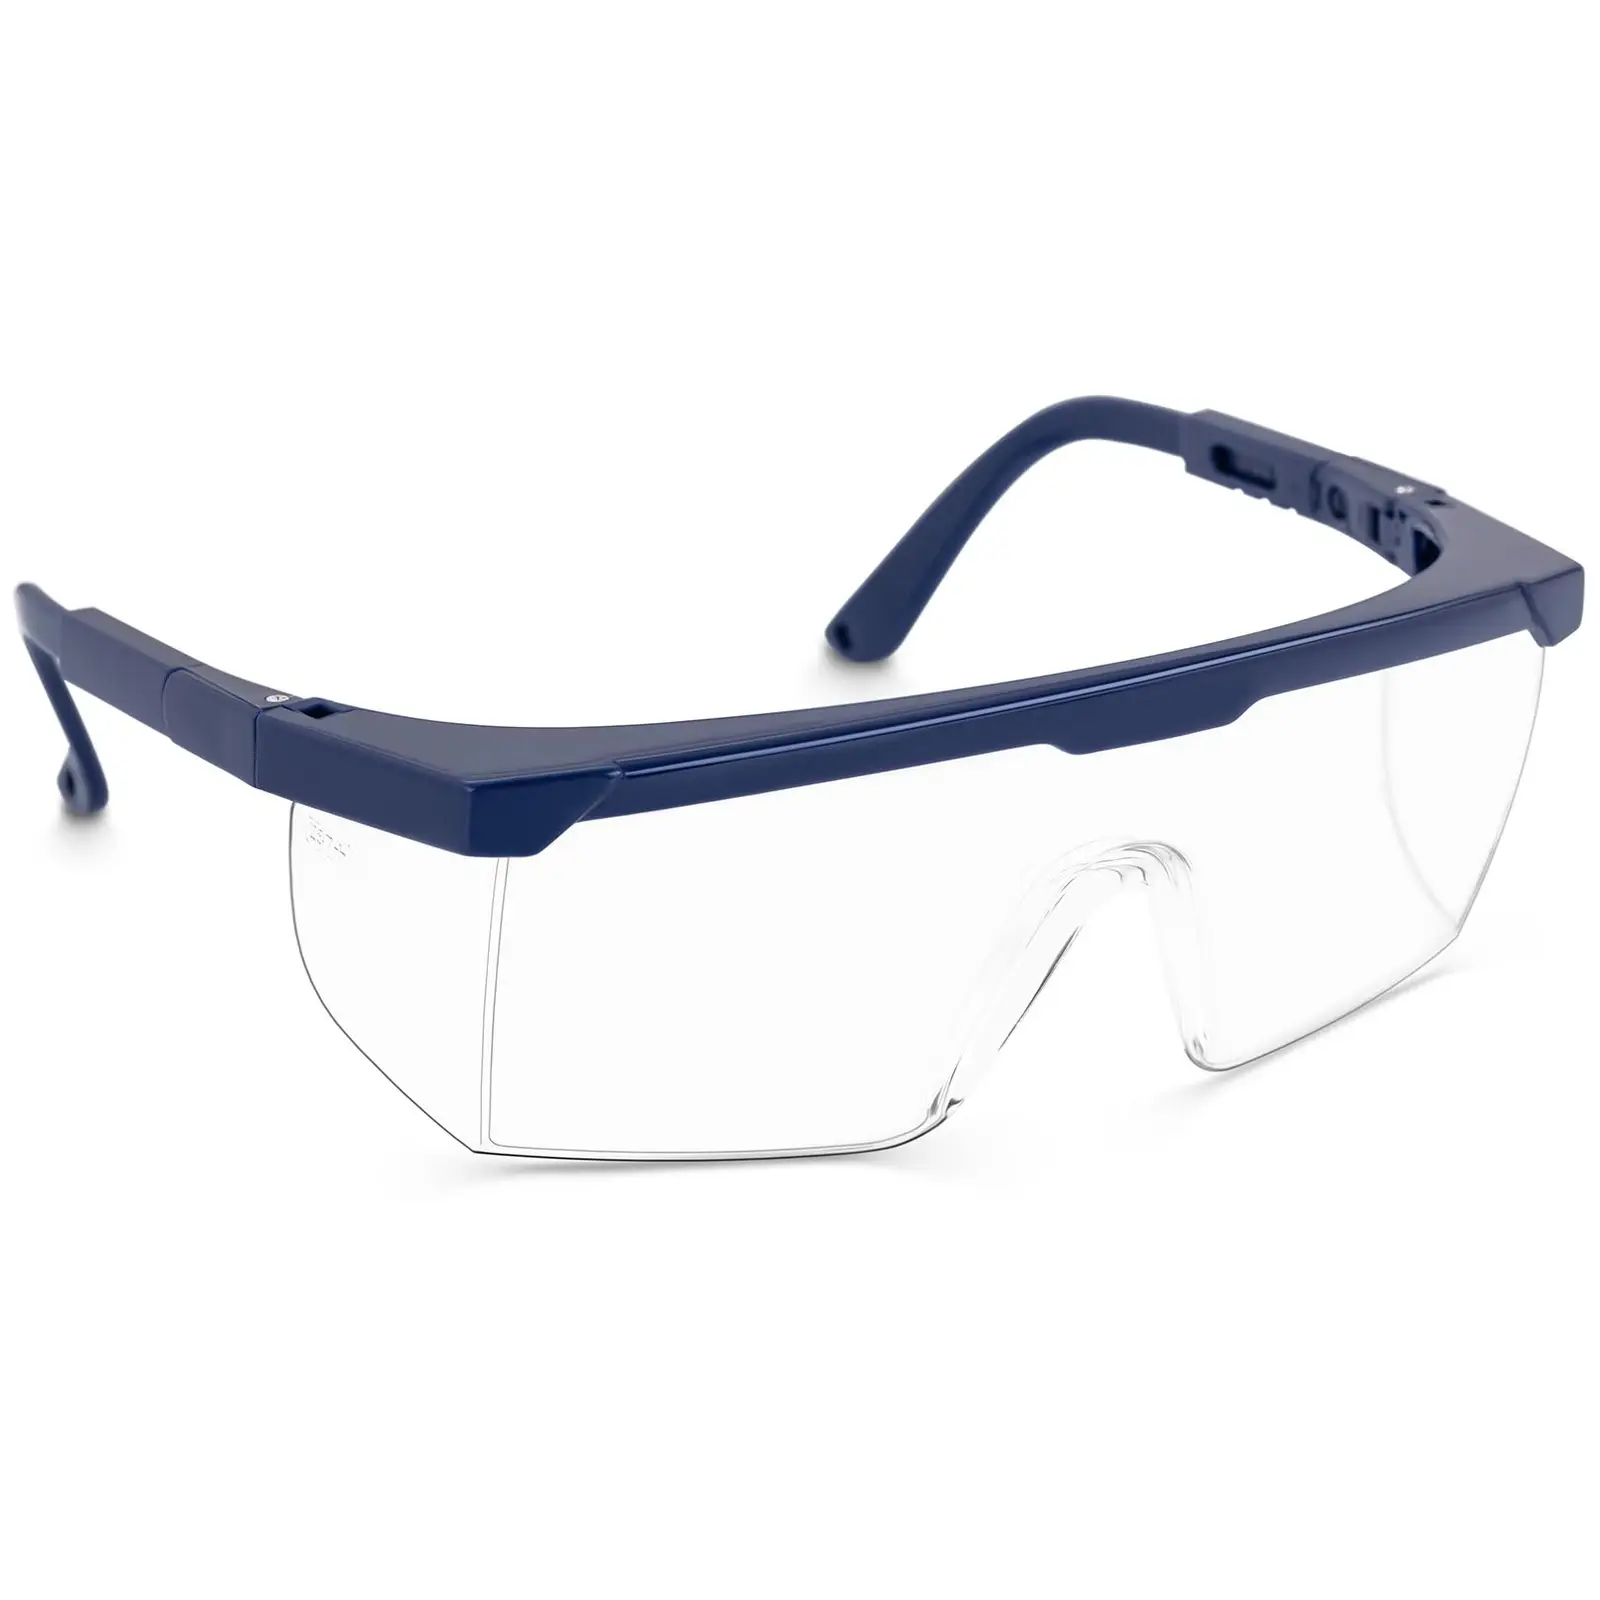 TECTOR Schutzbrille - klar - EN166 - verstellbar - 10 Stück